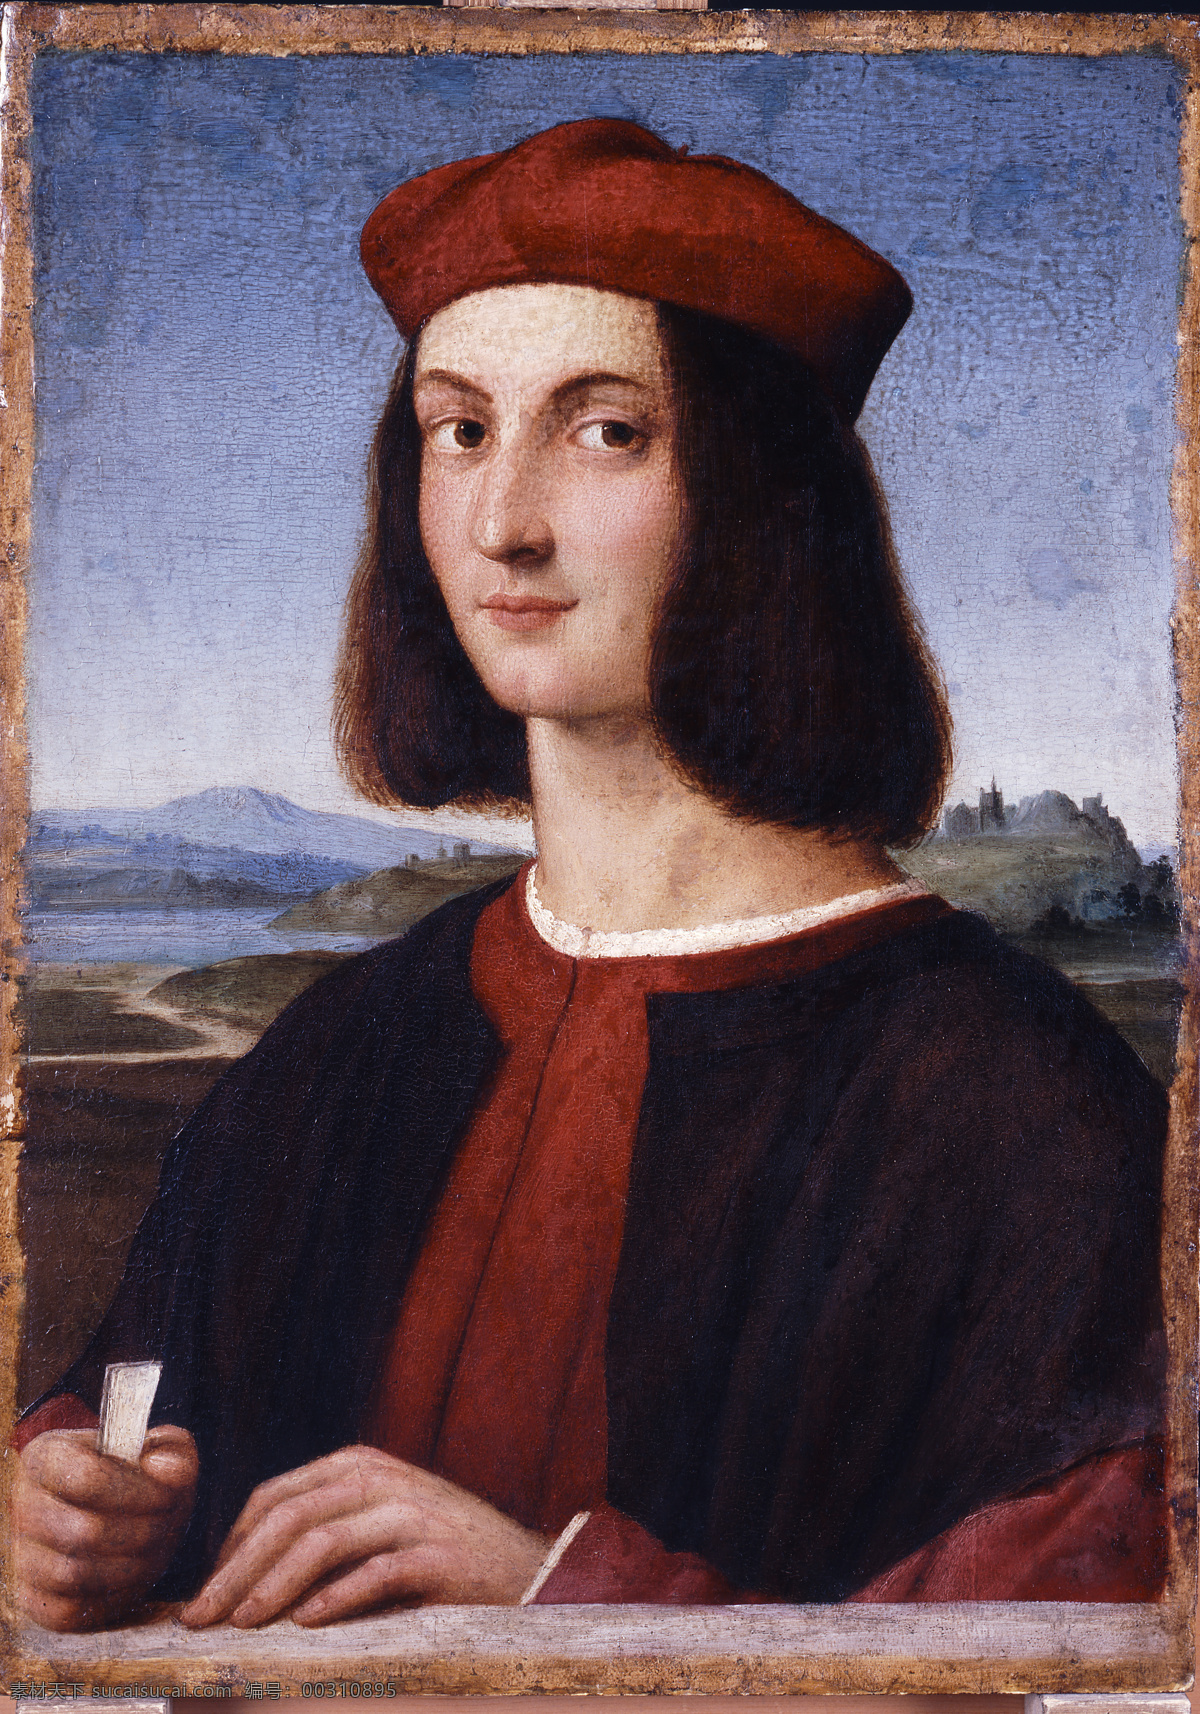 拉斐尔 油画 高清 大图 细腻 古典 文艺复兴 男青年 绘画书法 文化艺术